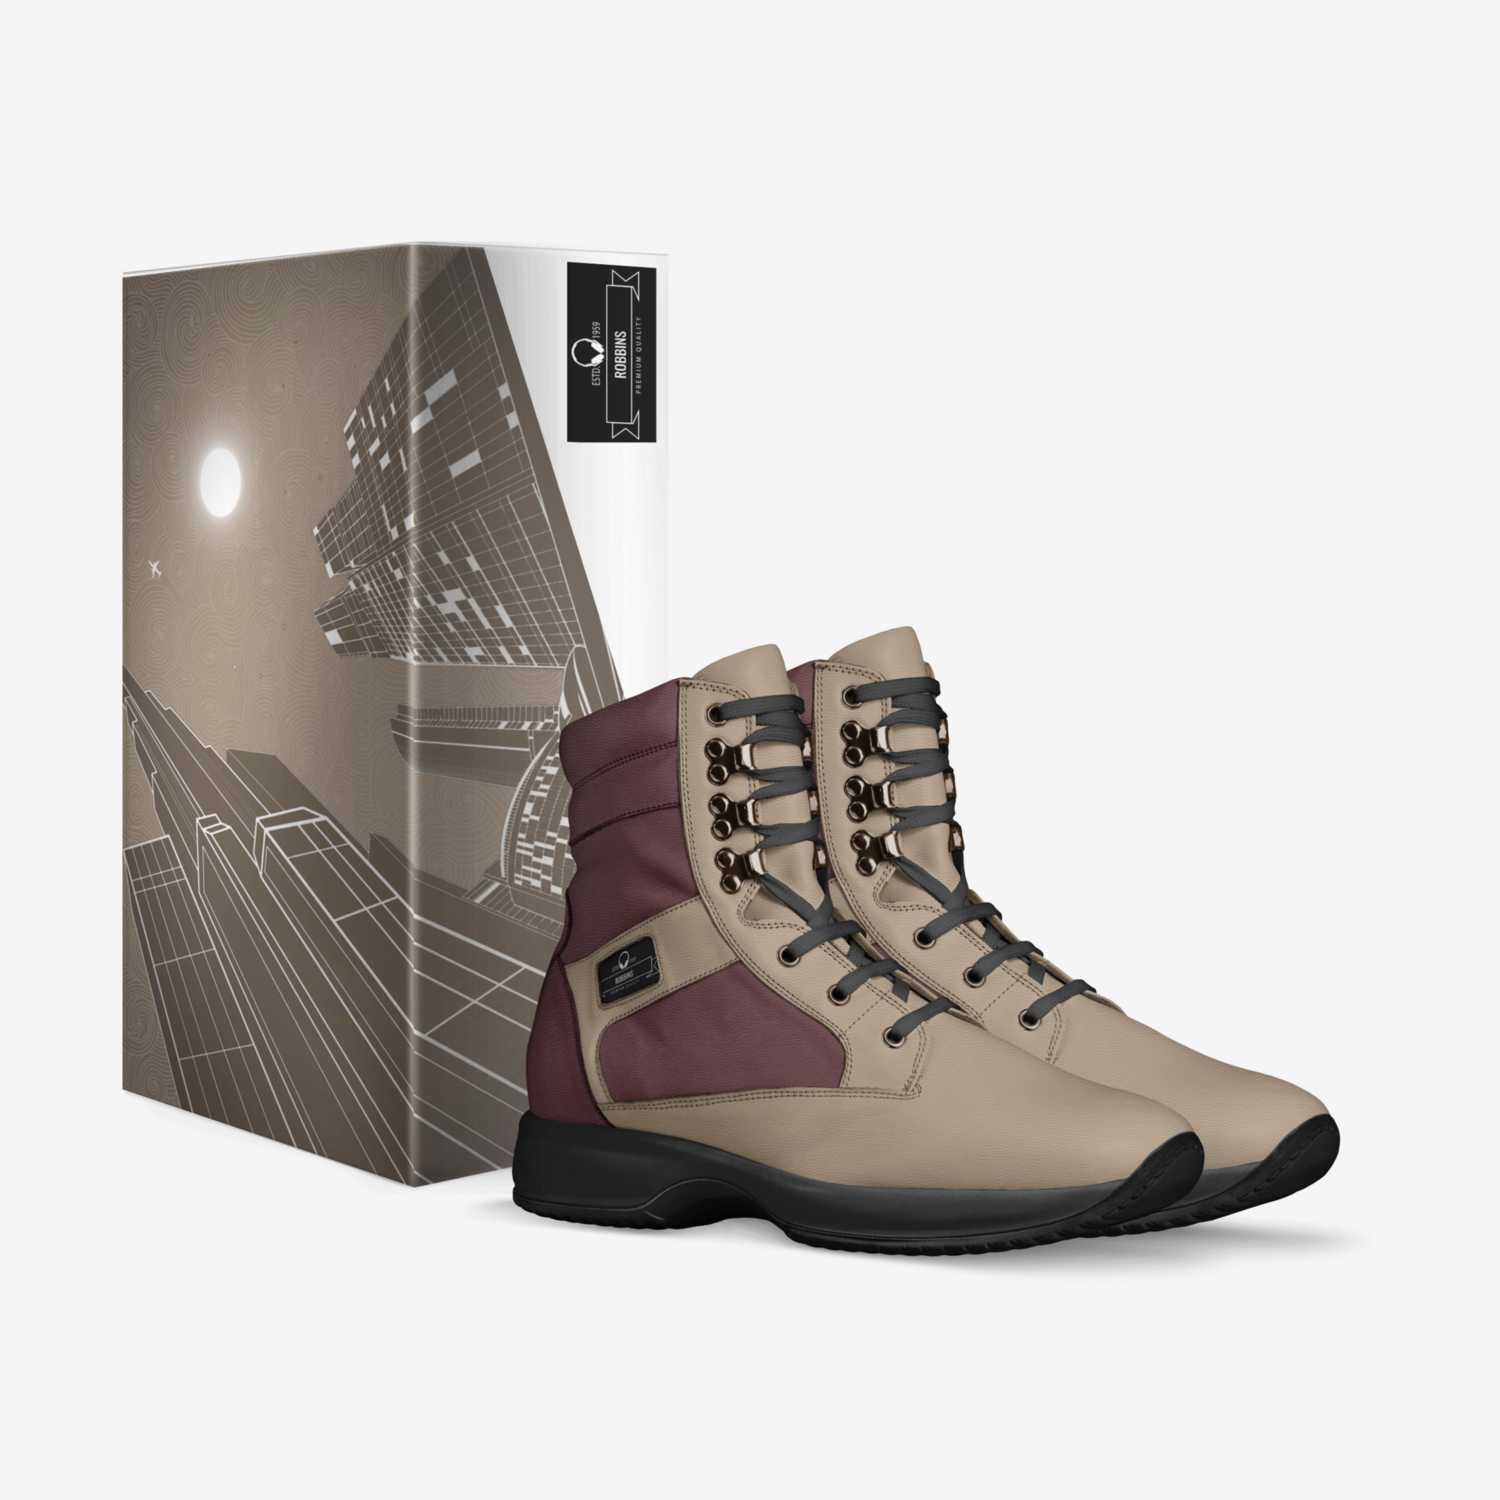 Olanda custom made in Italy shoes by Olanda Robbins | Box view